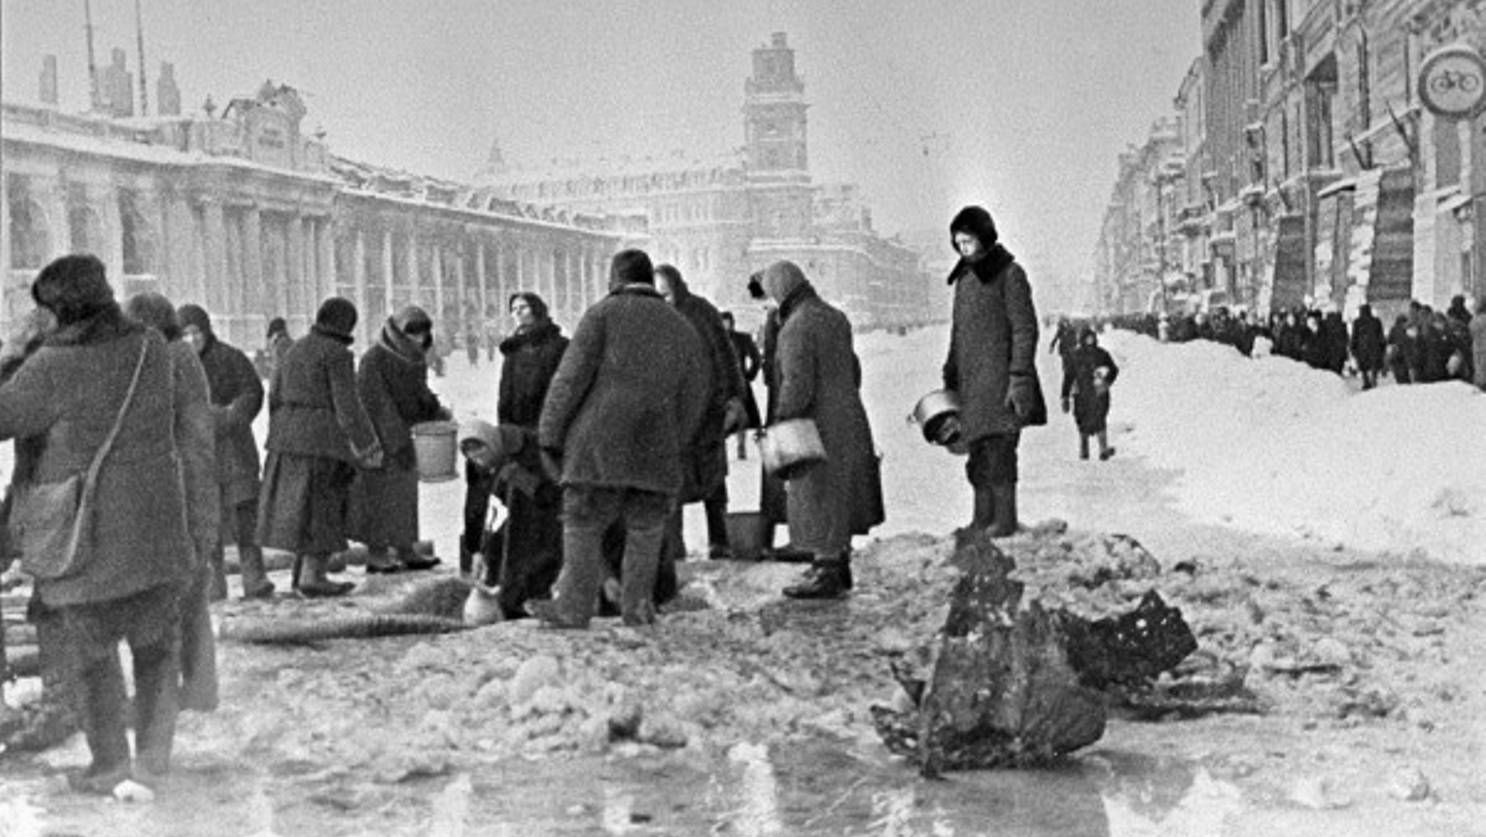 Жители блокадного Ленинграда набирают воду, появившуюся после артобстрела в пробоинах в асфальте на Невском проспекте, фото Б. П. Кудоярова, декабрь 1941, фрагмент